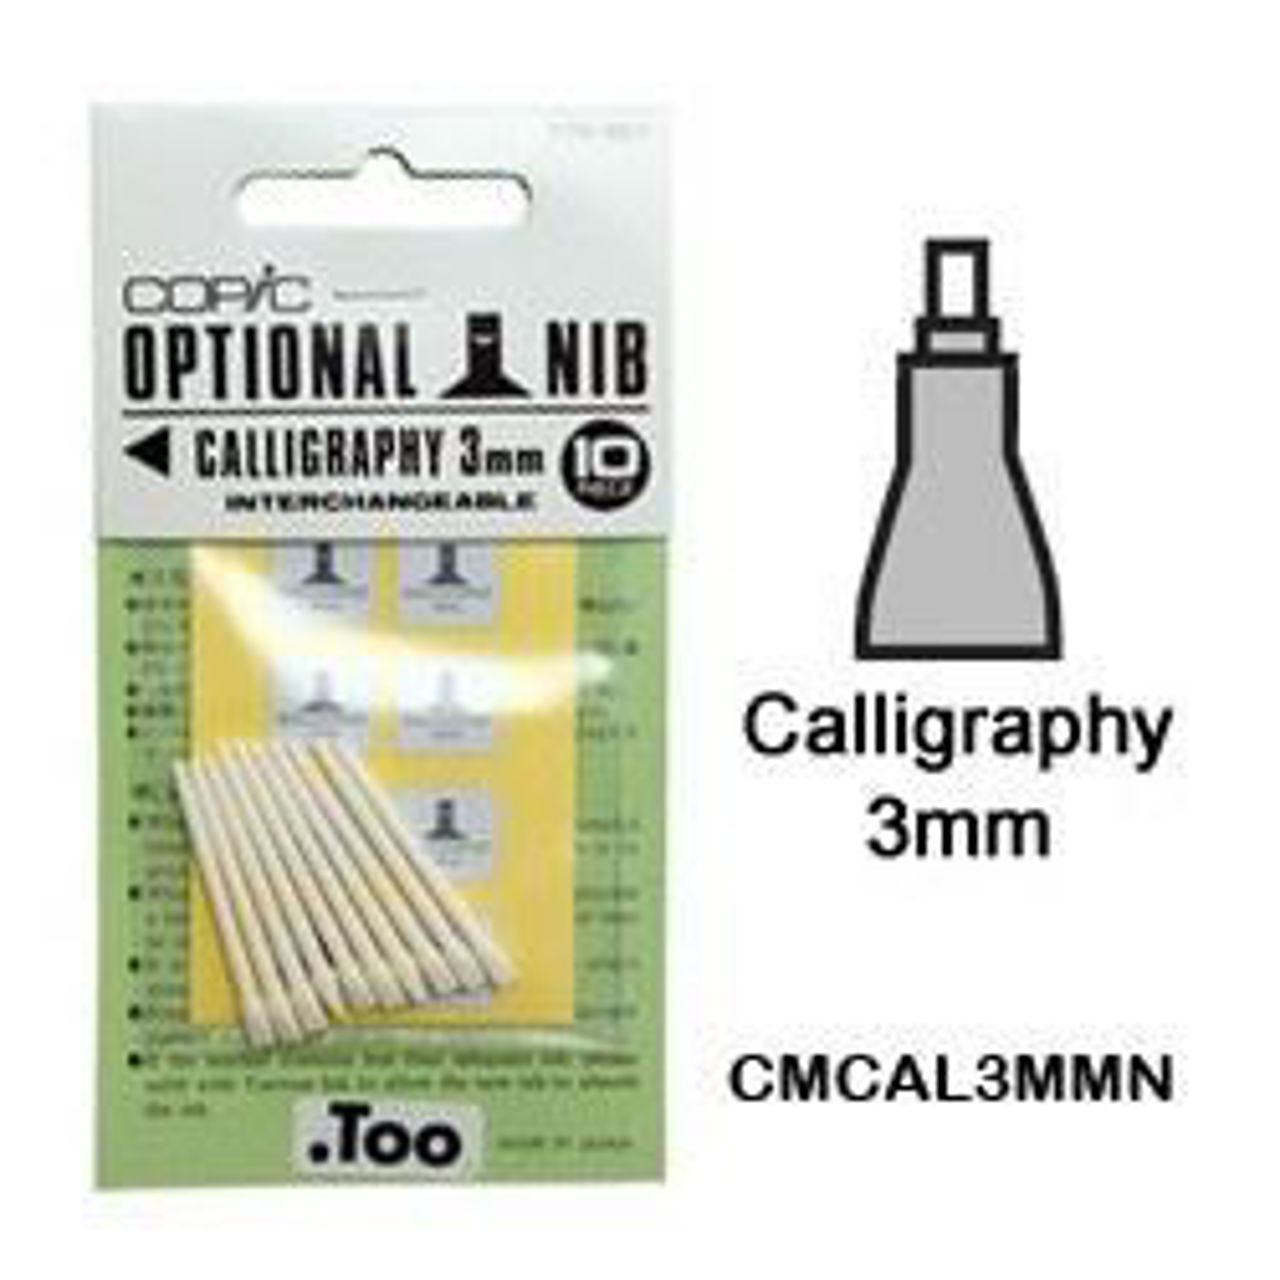 Copic Original Dual Nib Marker E13 Light Suntan